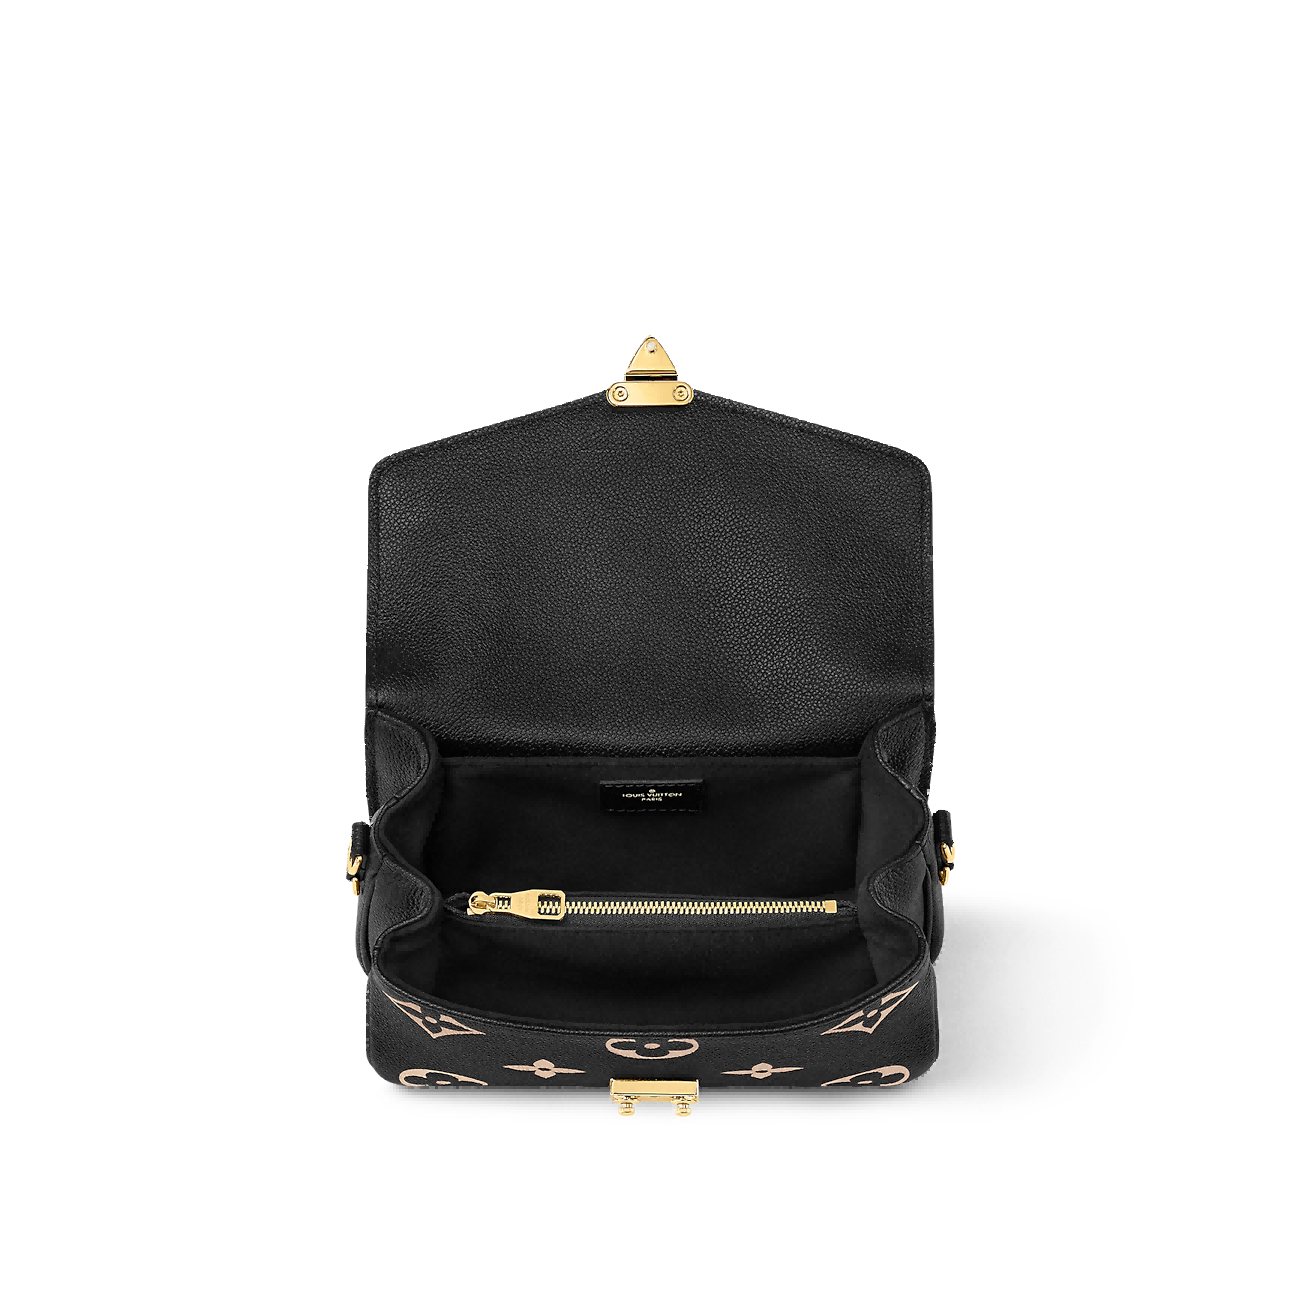 LOUIS VUITTON Pochette Métis East West Noir Bicolor Monogram Empreinte Leather Handbags